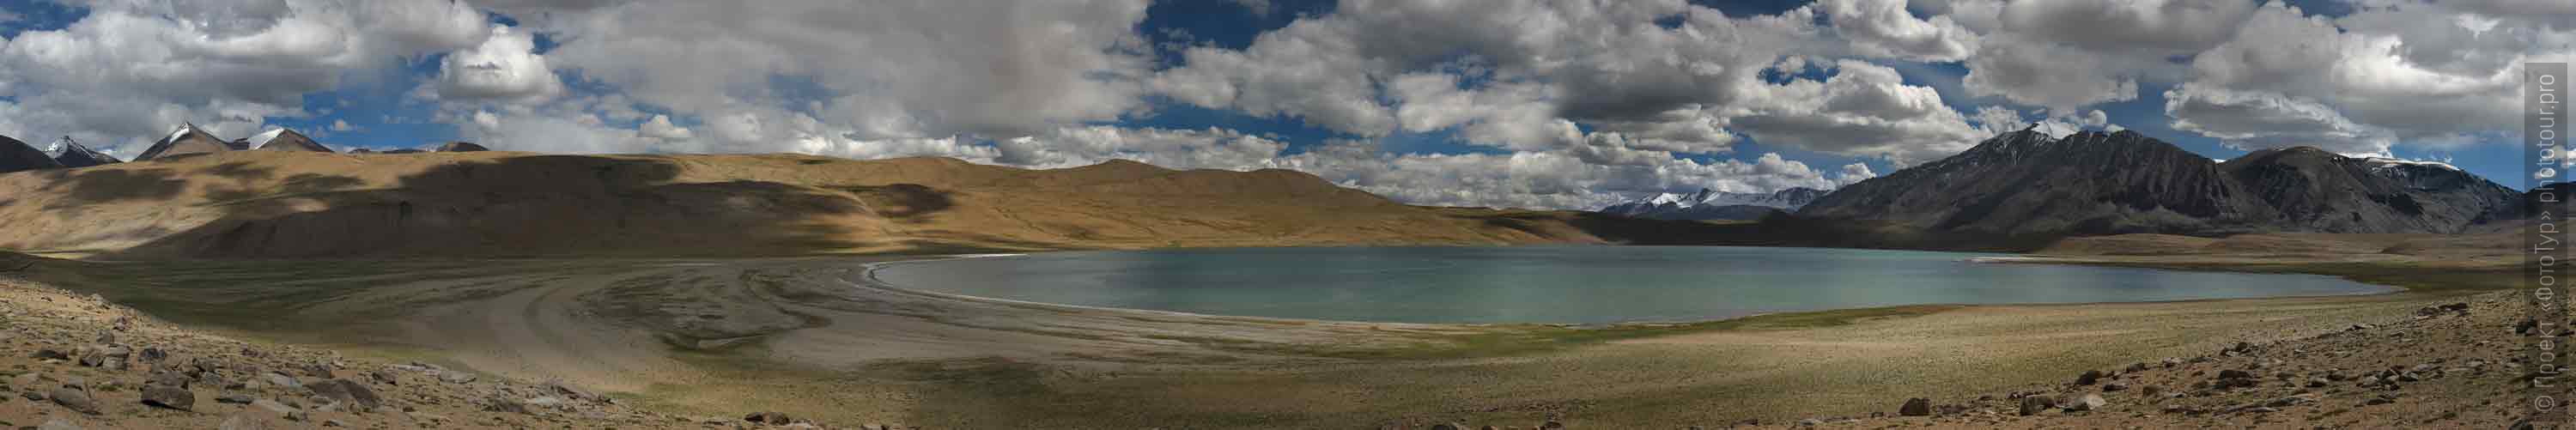 Озеро Кагьяр Цо. Тур Тибет Озерный Рекламный: Высокогорные озера, долина гейзеров, Ламаюру, Цветные Горы, 01 - 10.09. 2022 года.